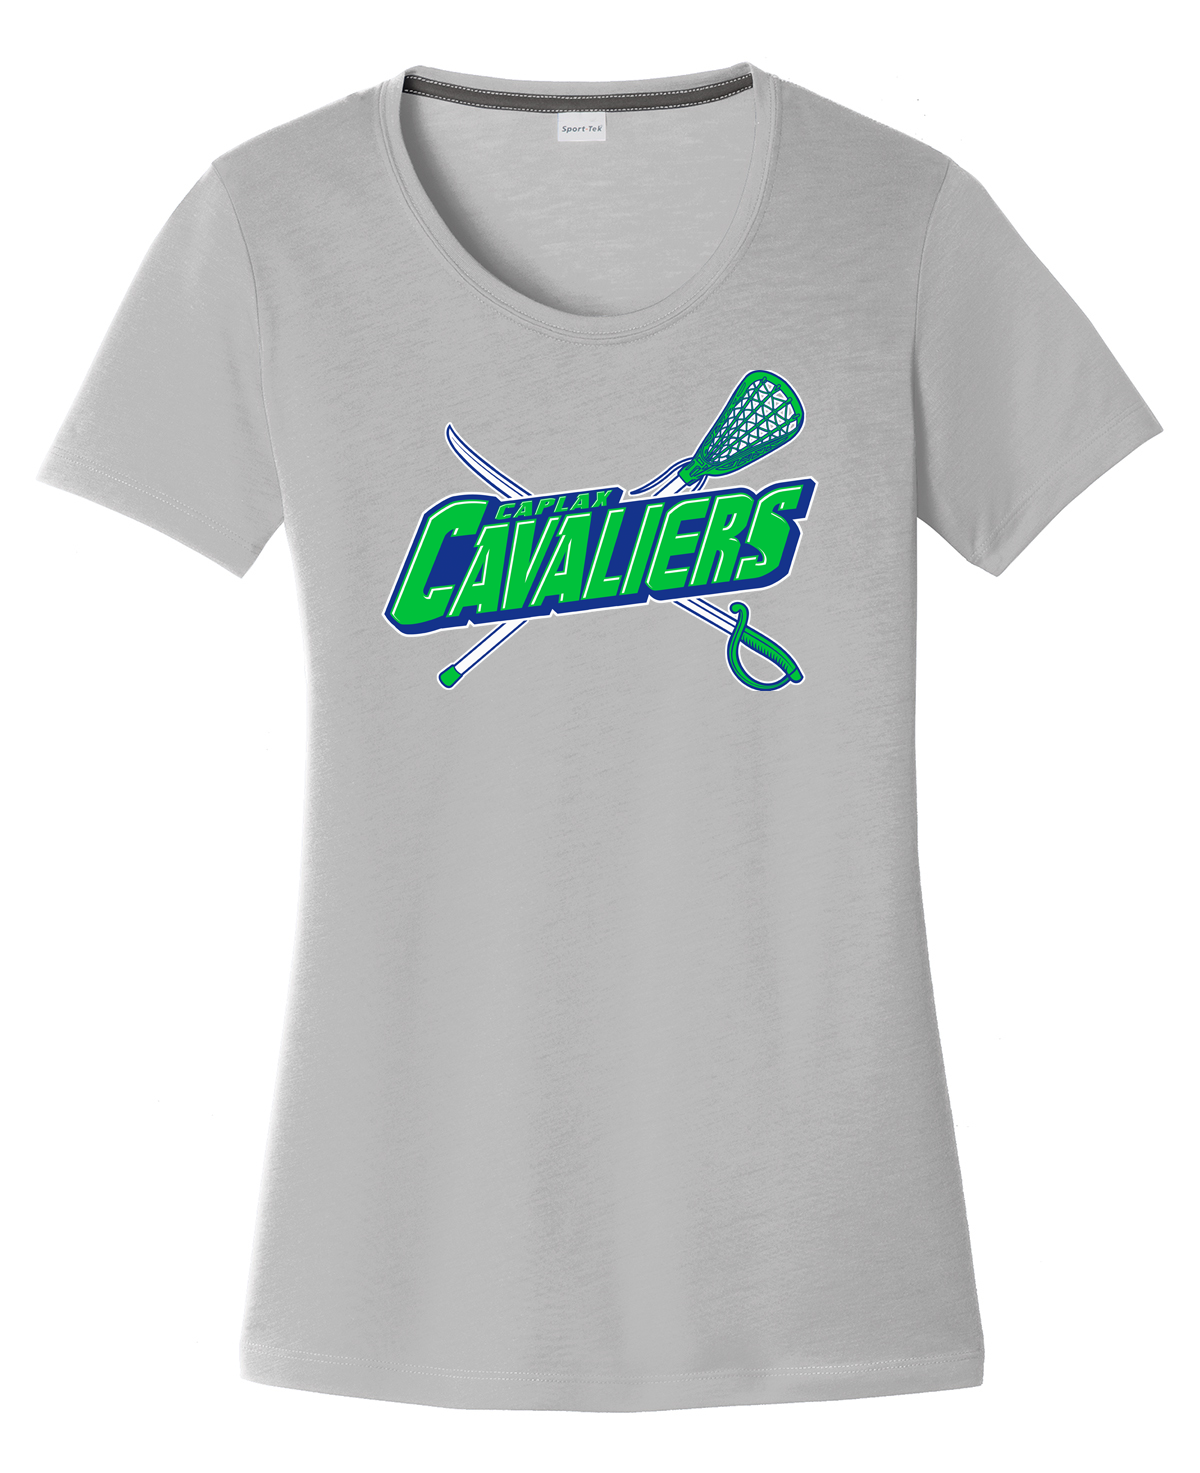 Cavaliers Lacrosse Women's CottonTouch Performance T-Shirt